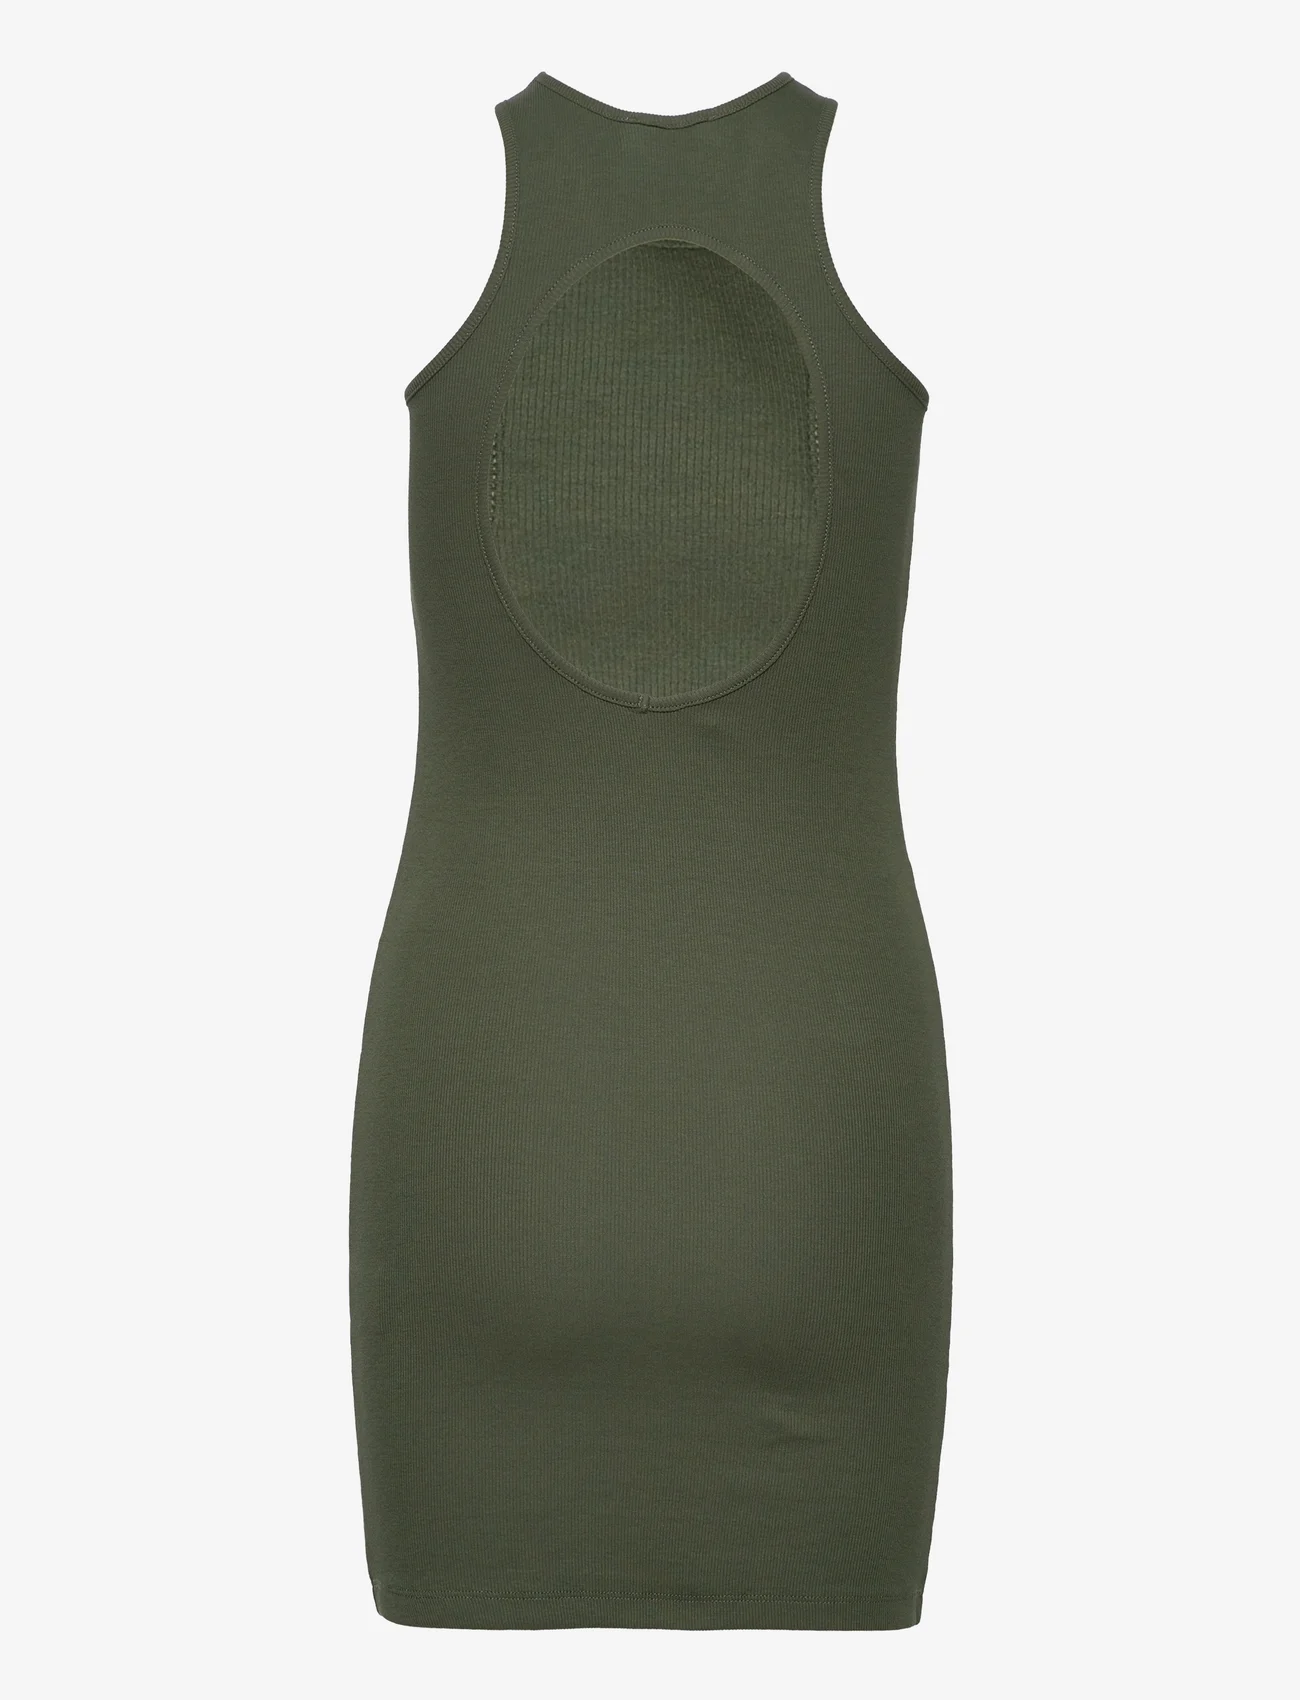 Hosbjerg - Gabara Hole Rib Dress - etuikleider - bottle green - 1